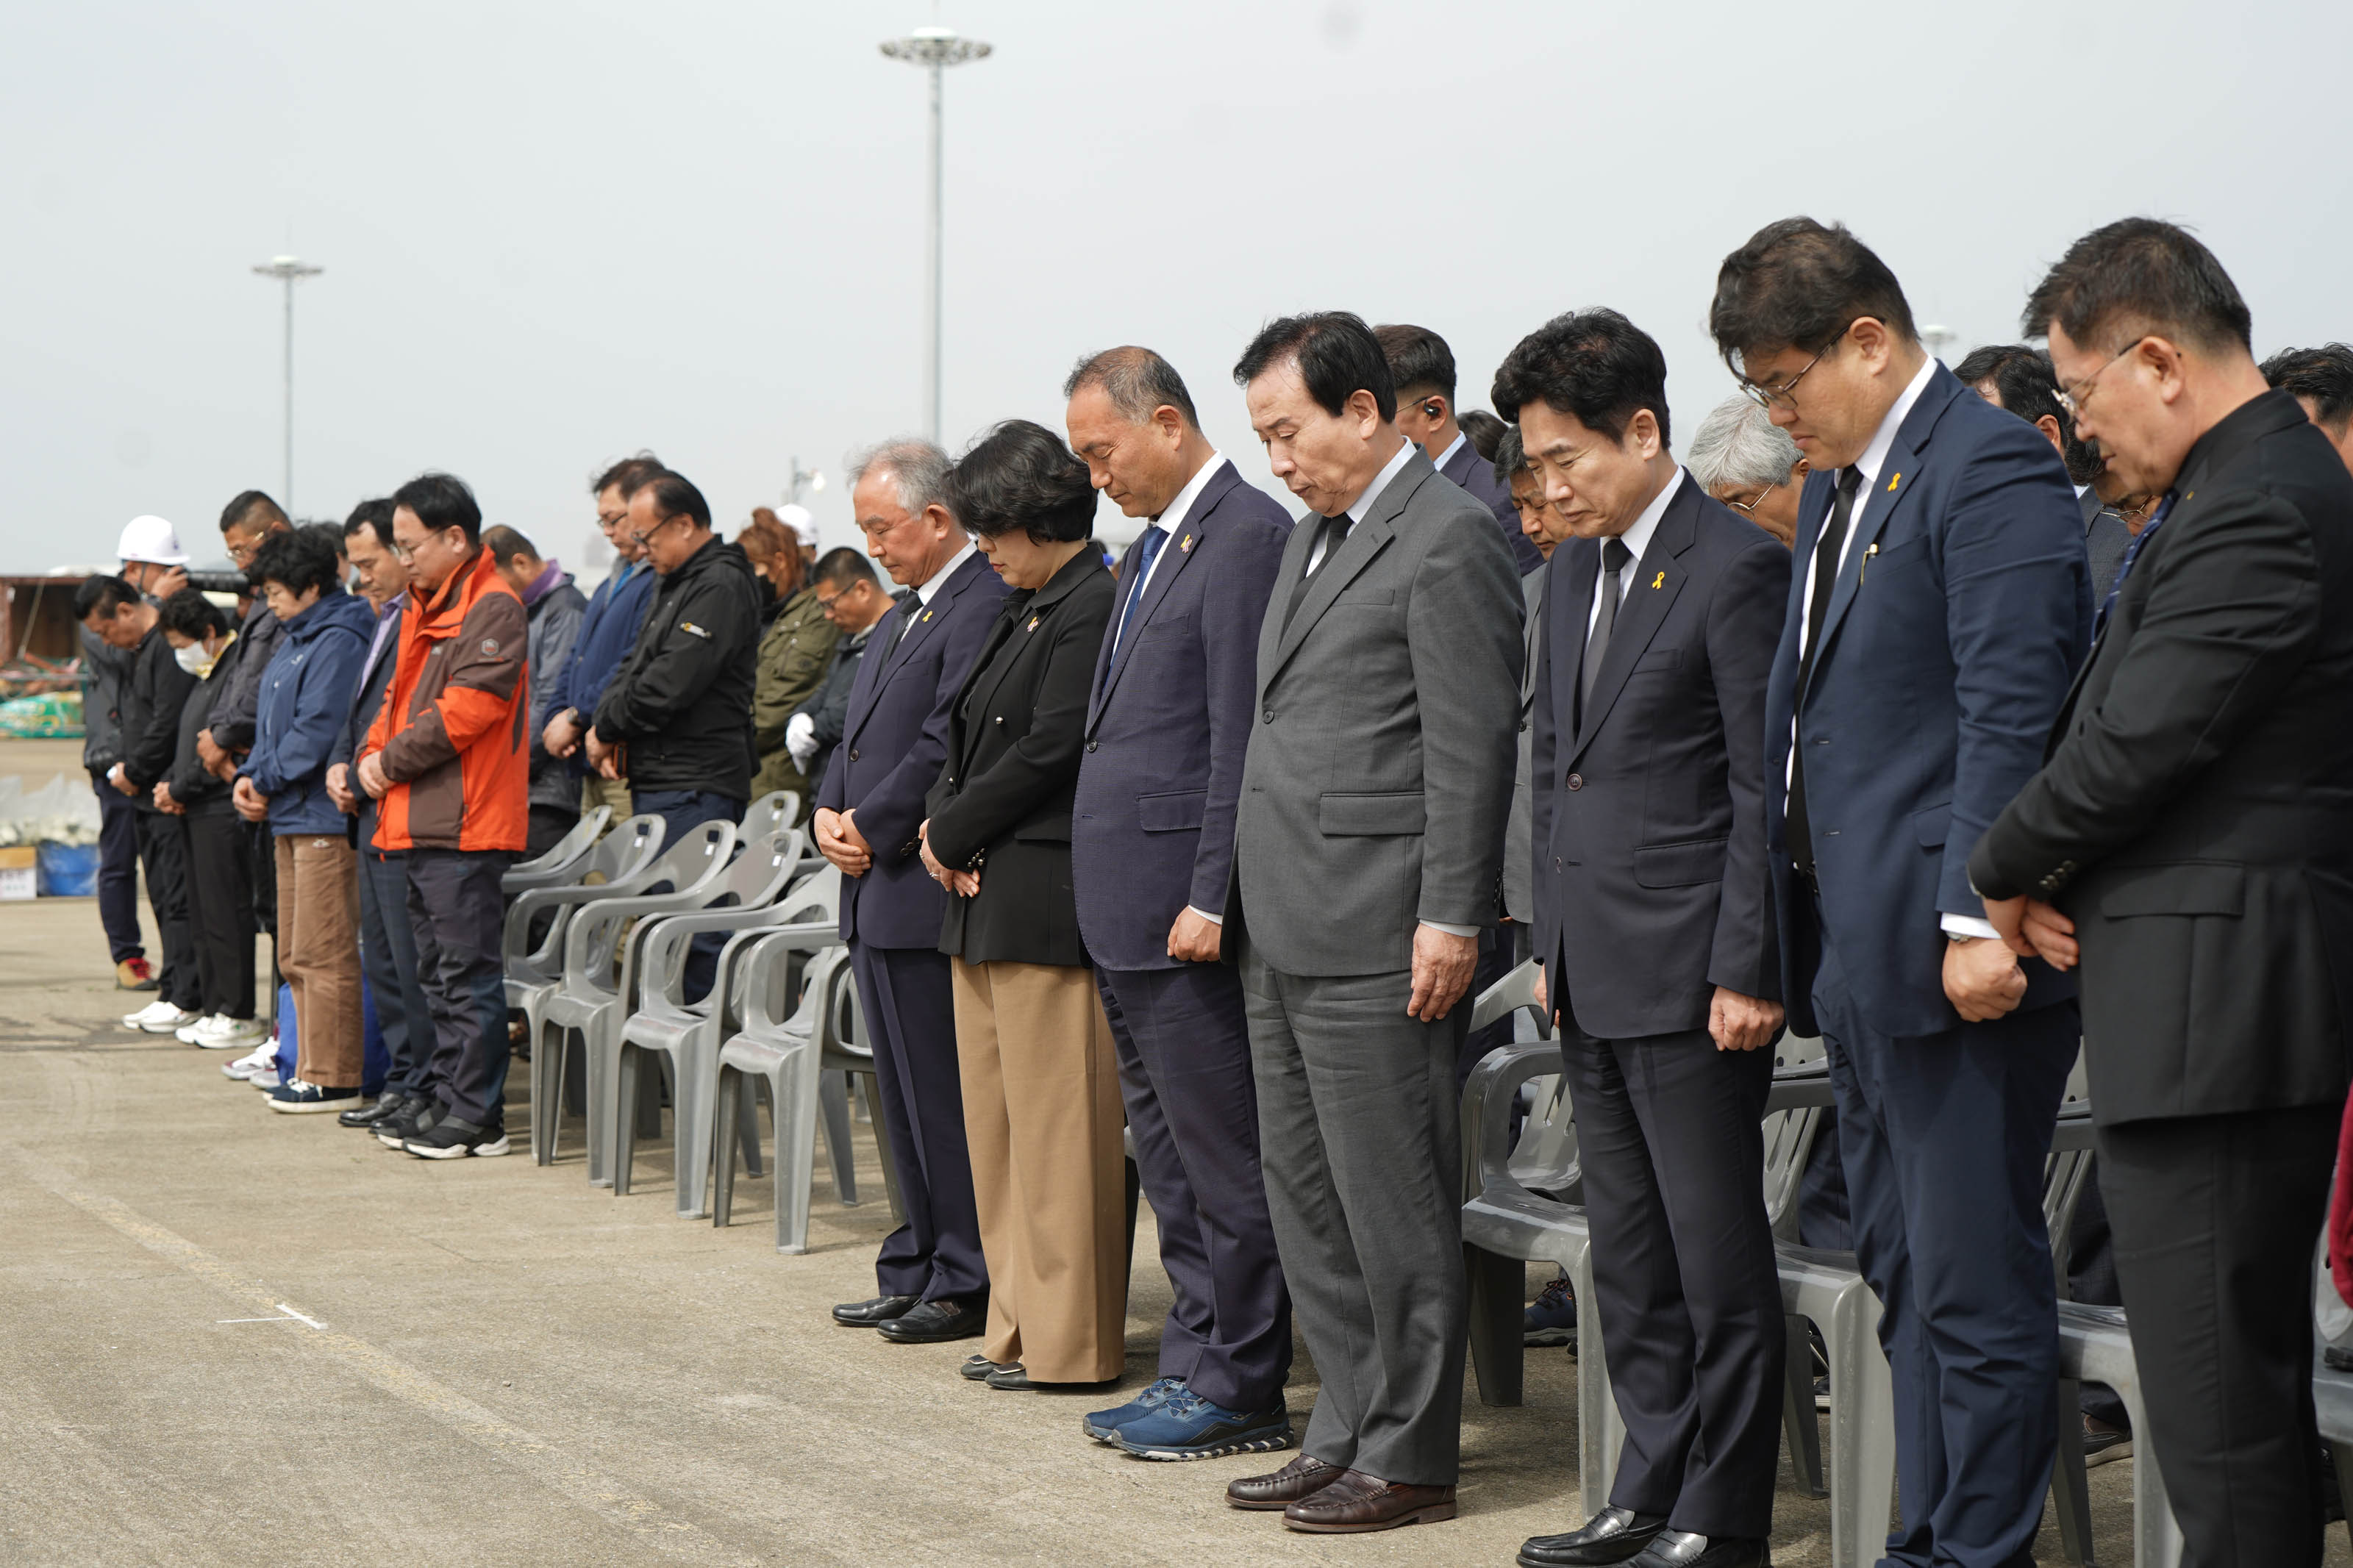 목포시장 박홍률과 참석한 관계자들이 다함께 자리에서 일어나 묵념하는 모습